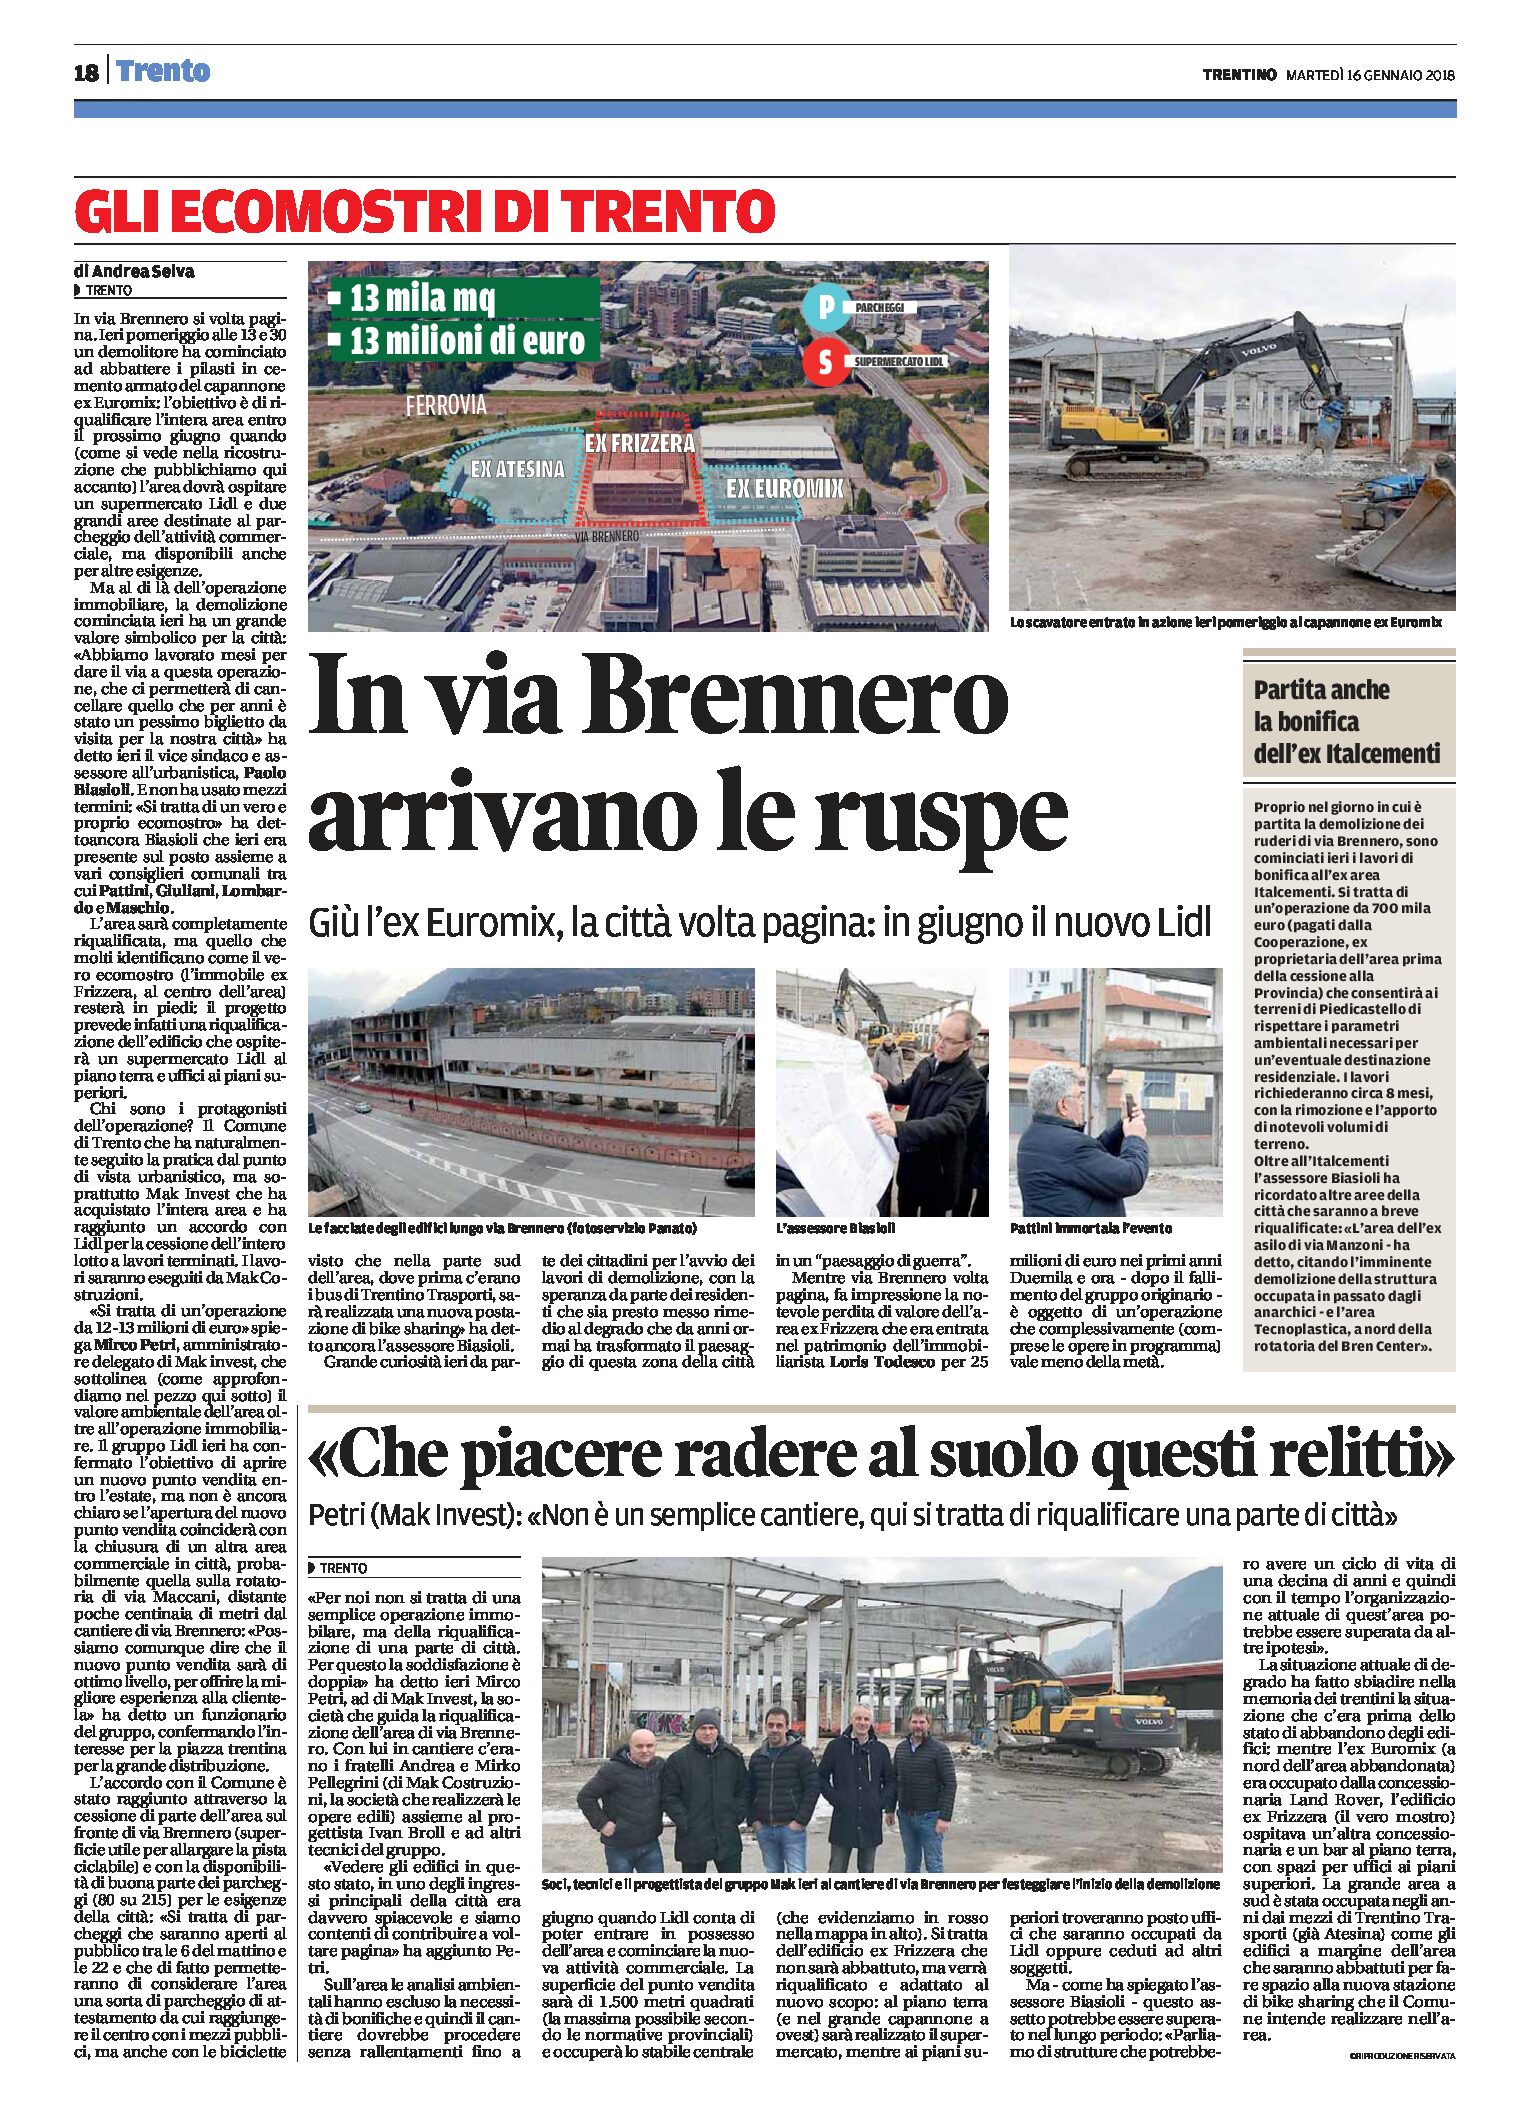 Trento, via Brennero: al via la demolizione di ex Frizzera ed ex Euromix